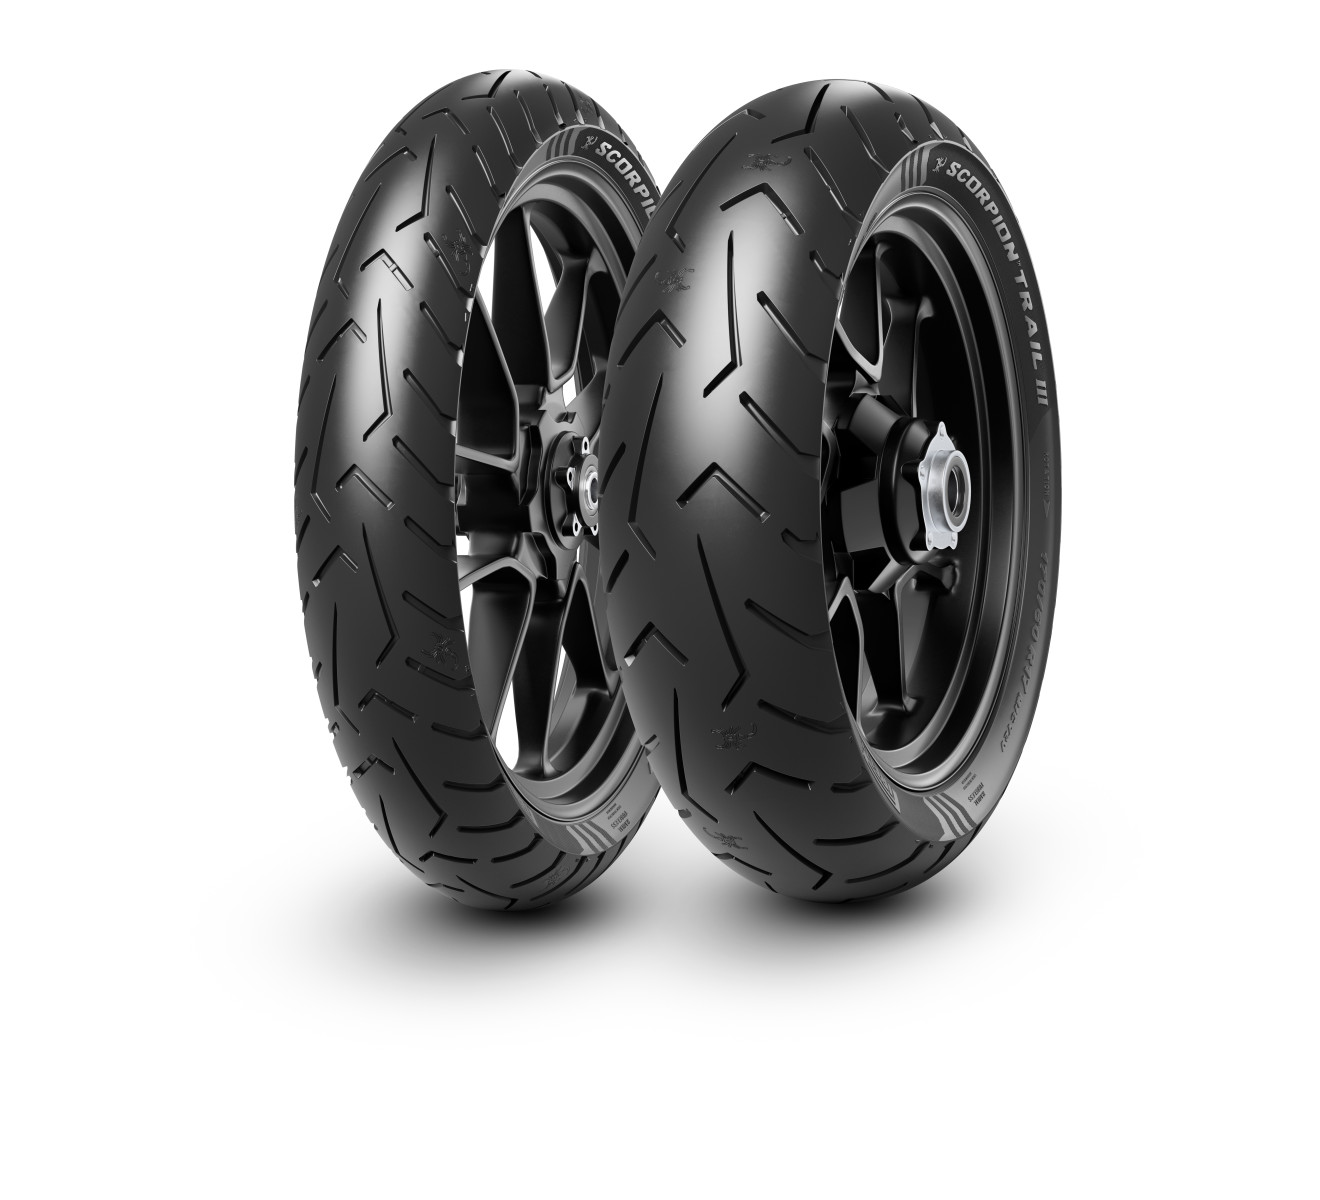 Gomme Nuove Pirelli 150/70 R17 69V SCORPION TRAIL III pneumatici nuovi Estivo